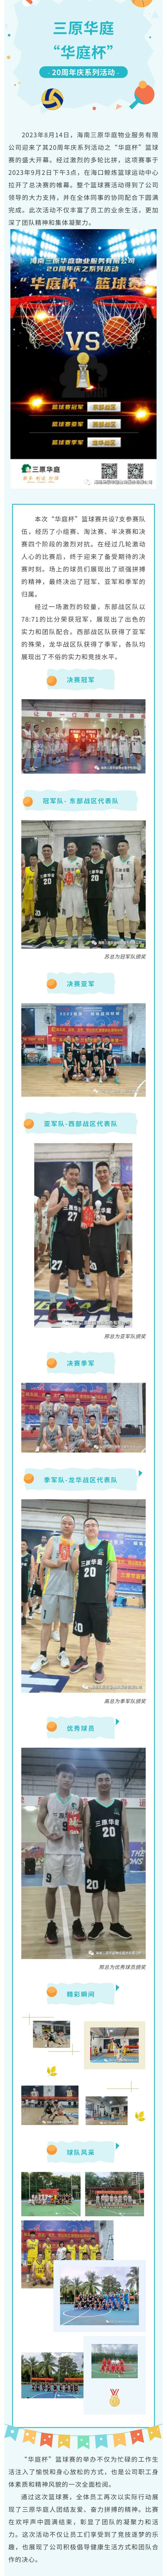 長(cháng)圖籃球決賽.jpg